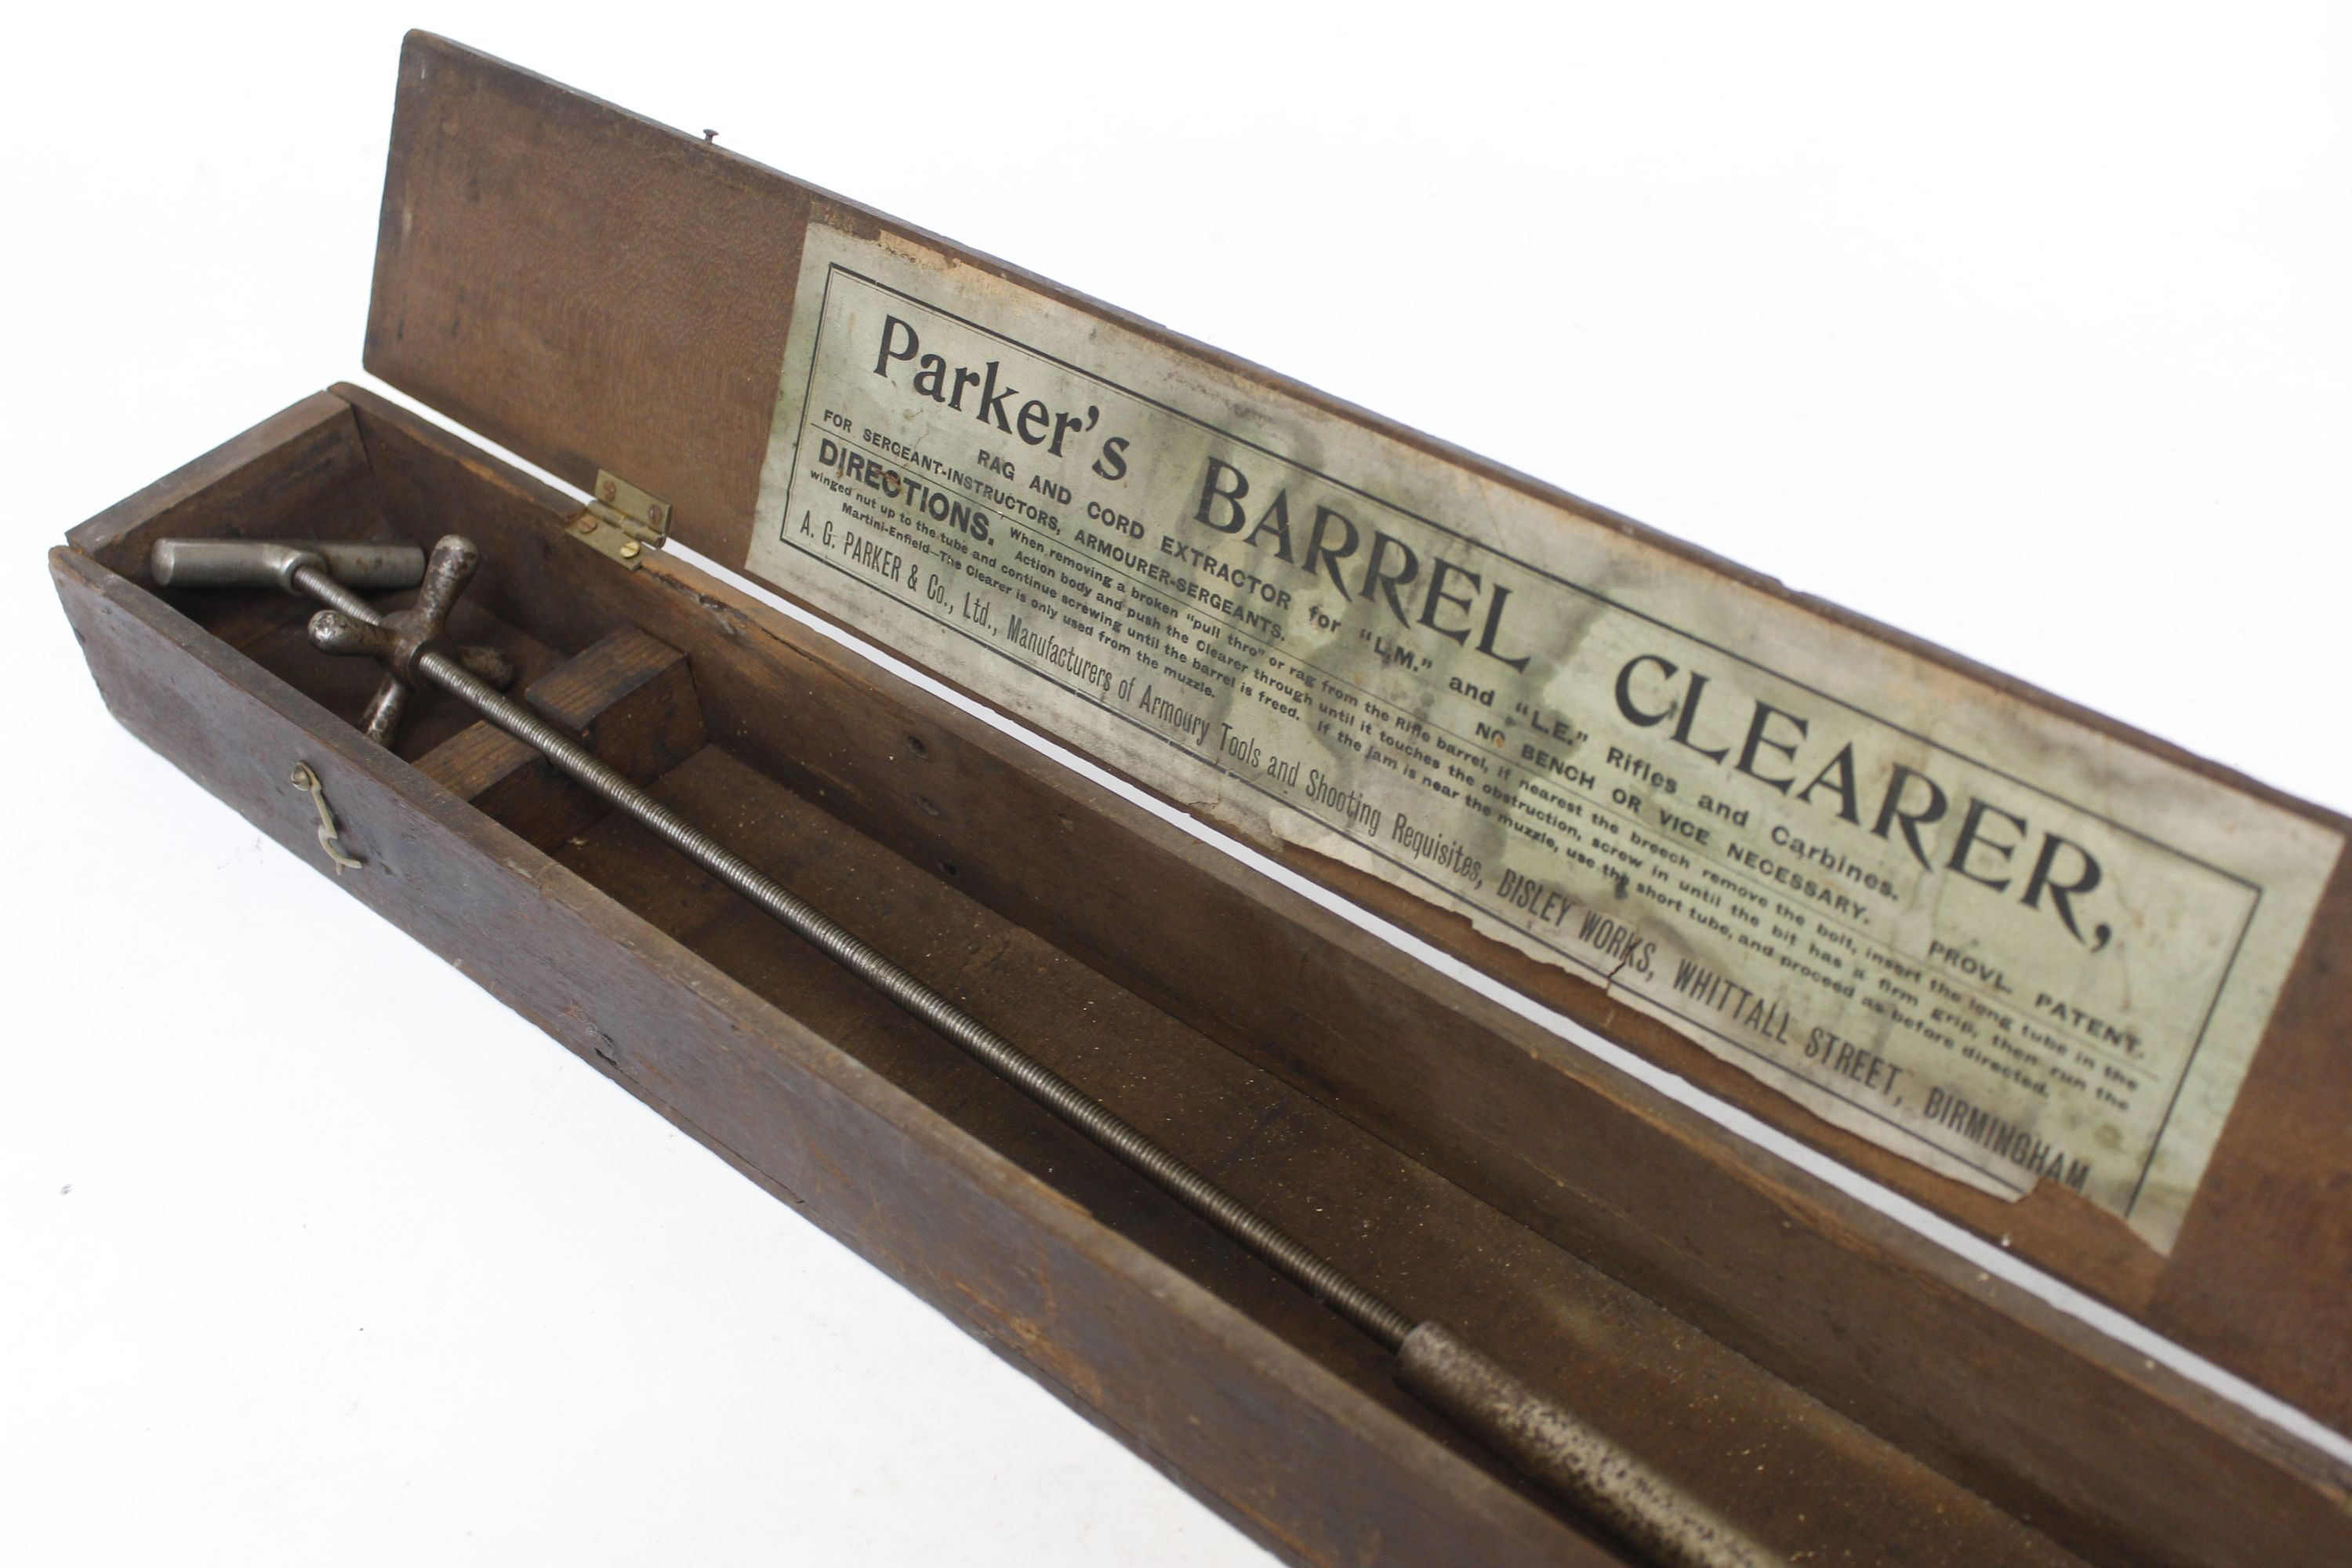 Vintage Parker's Barrel Clearer in wood box with original paper label